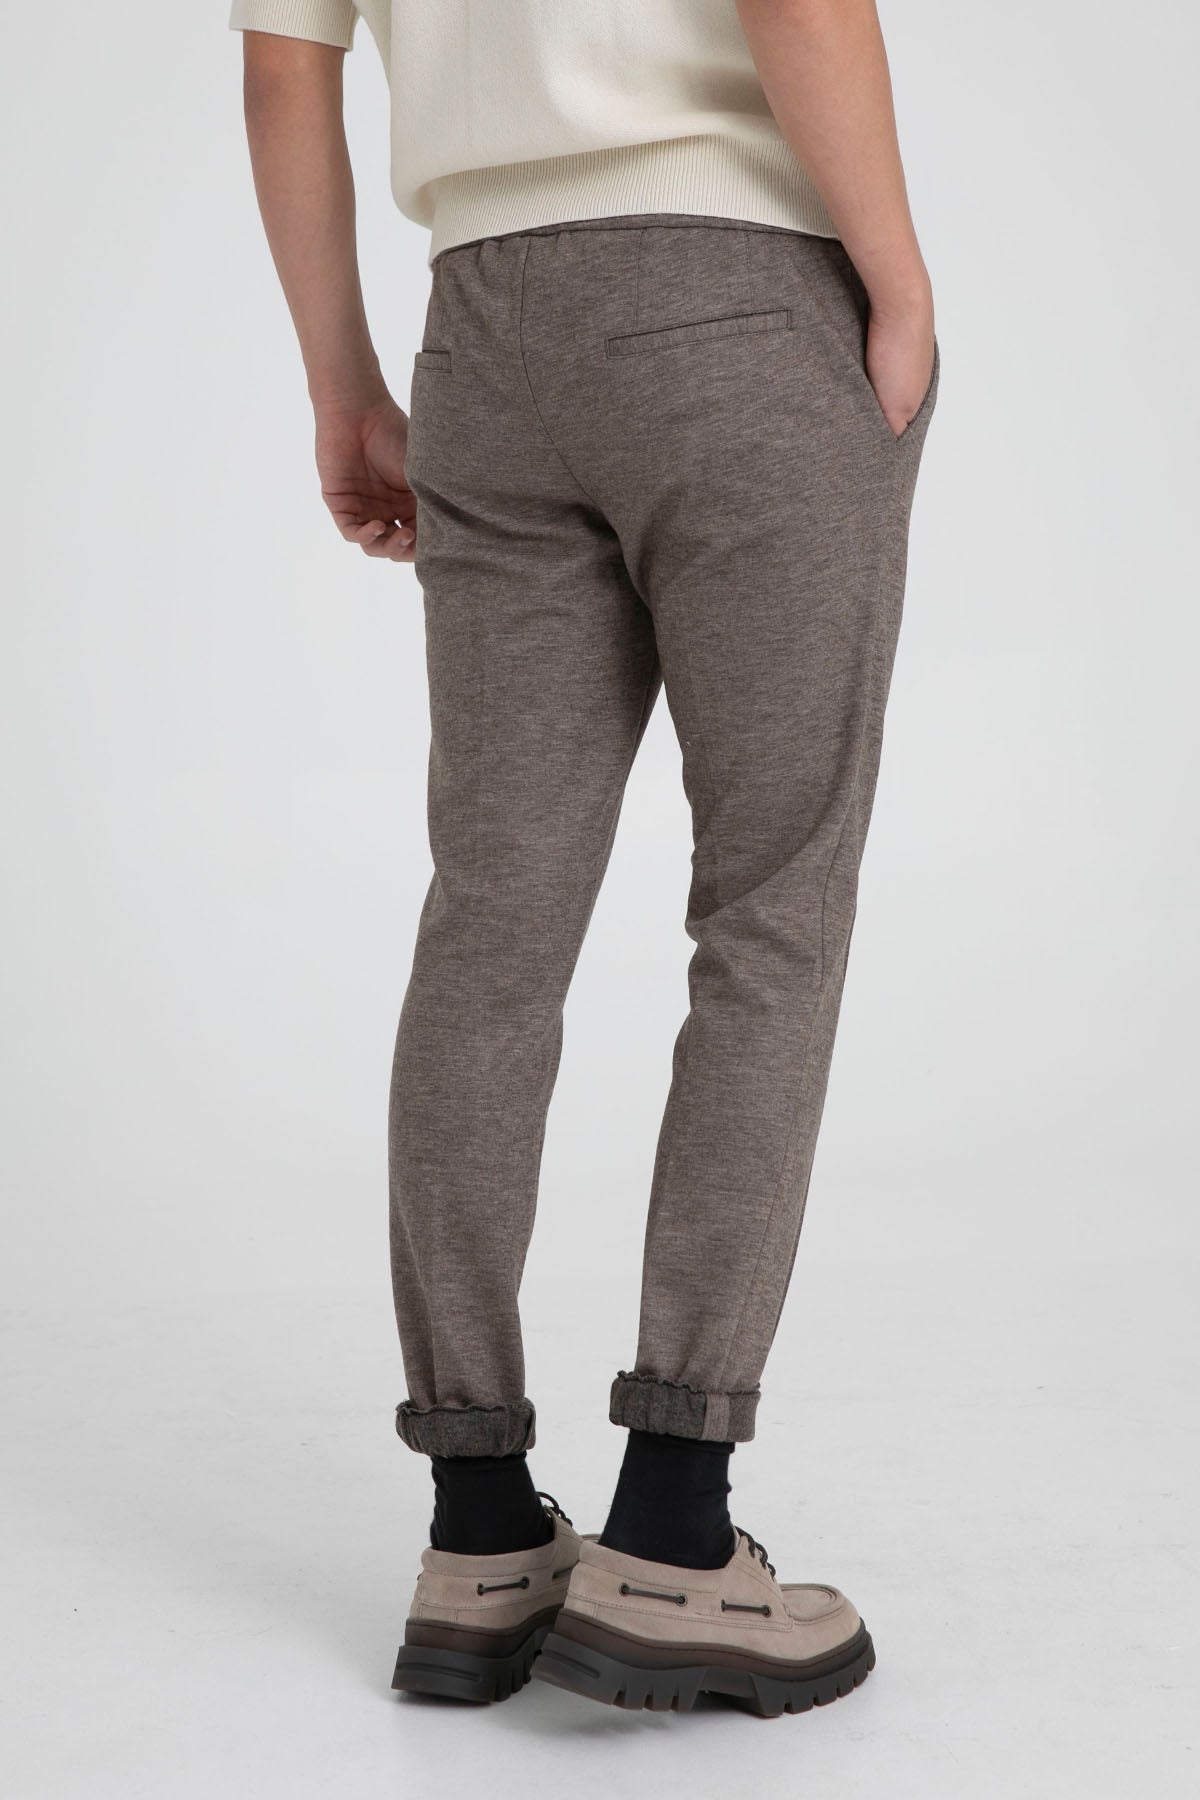 Fradi Beli Lastikli Slim Fit Jogger Pantolon-Libas Trendy Fashion Store